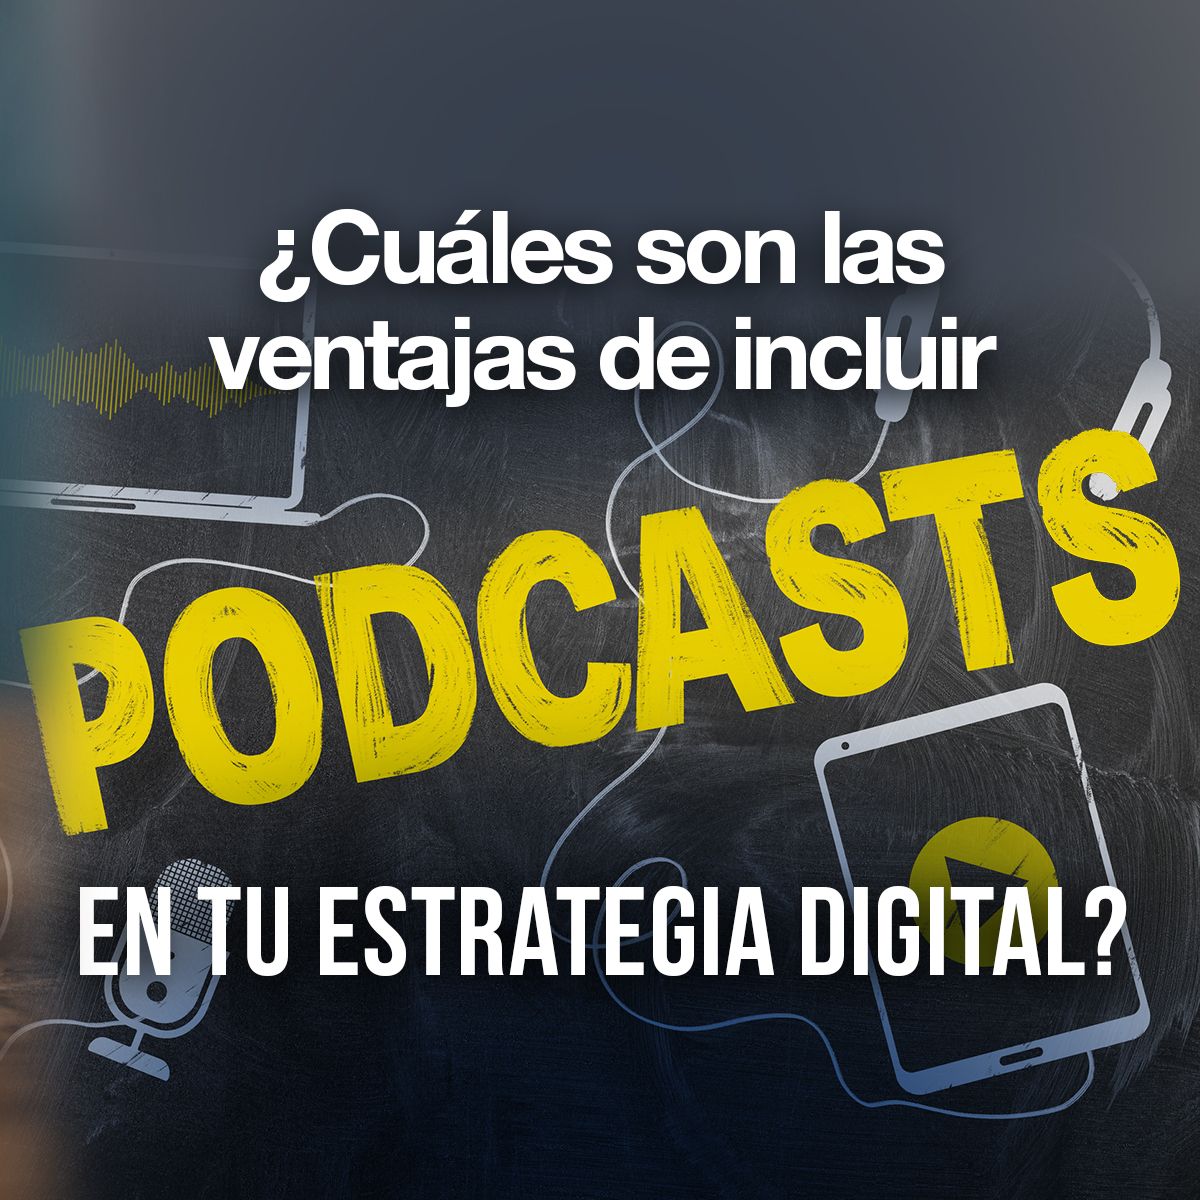 ¿Cuáles son las ventajas de incluir podcasts en tu estrategia digital?